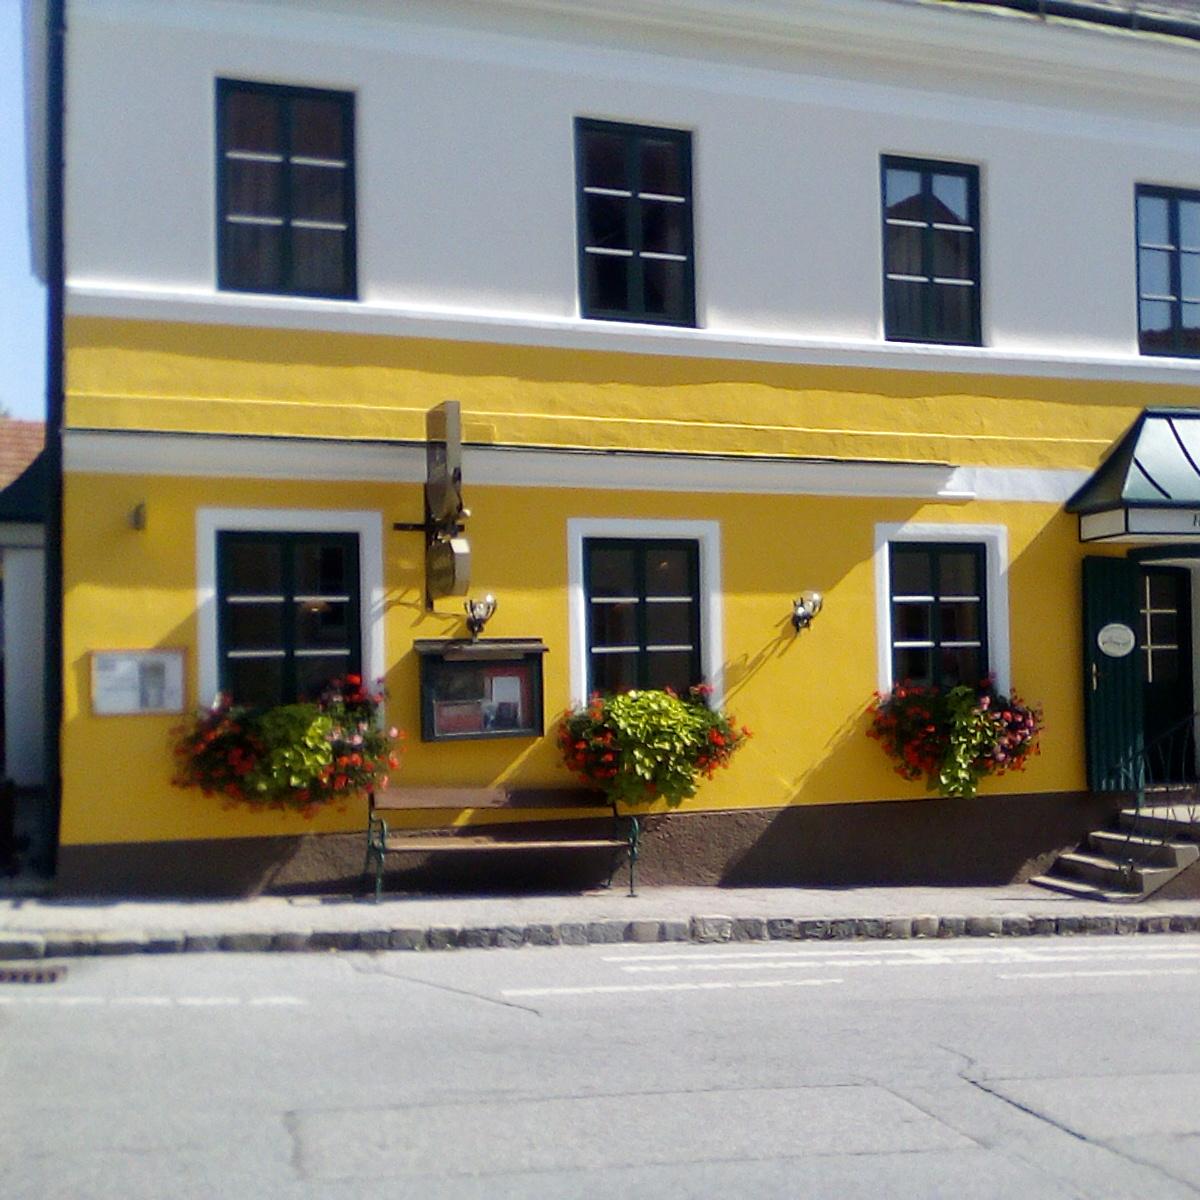 Restaurant "Gasthof Heissenberger" in Krumbach